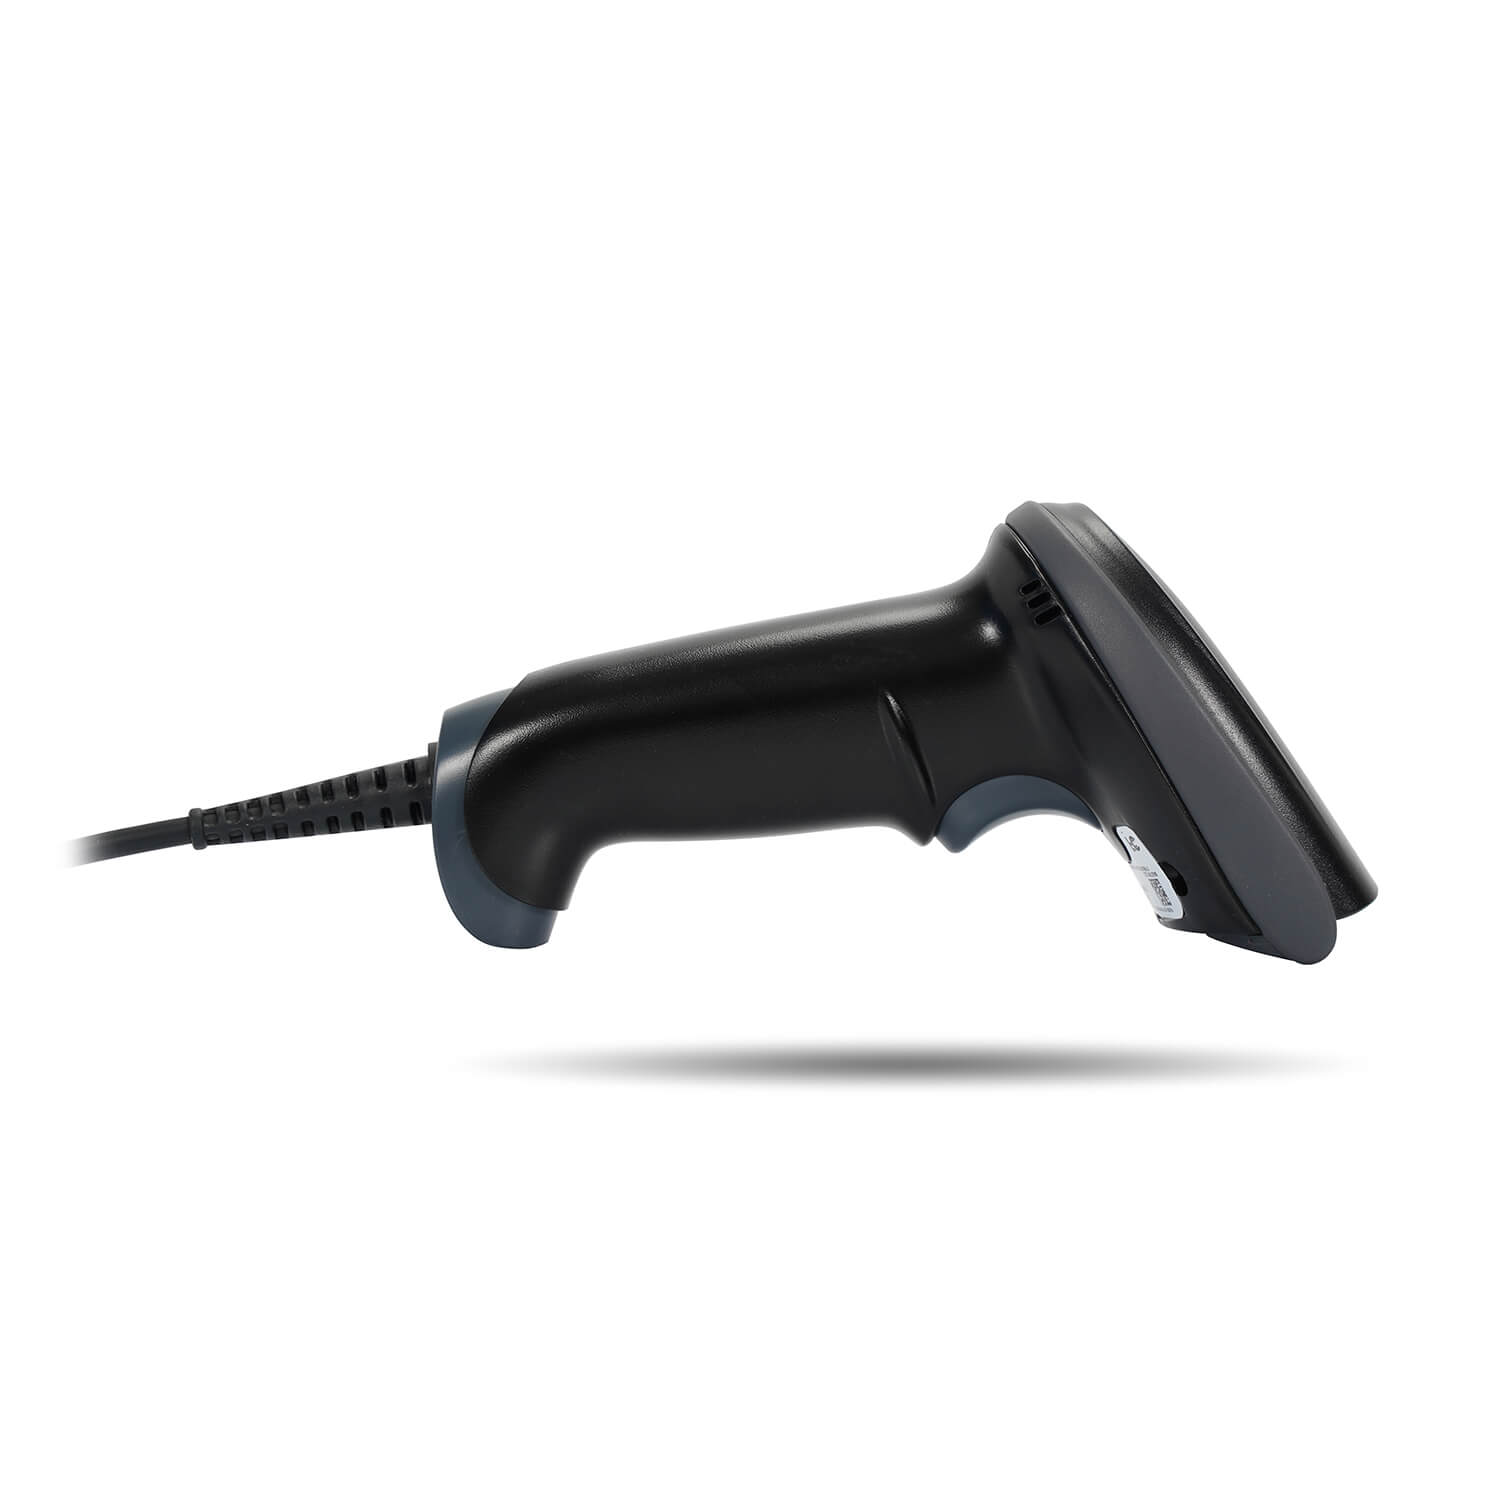 Сканер штрих-кода Mertech 2210 P2D SUPERLEAD USB Black Снят с производства (4809) 